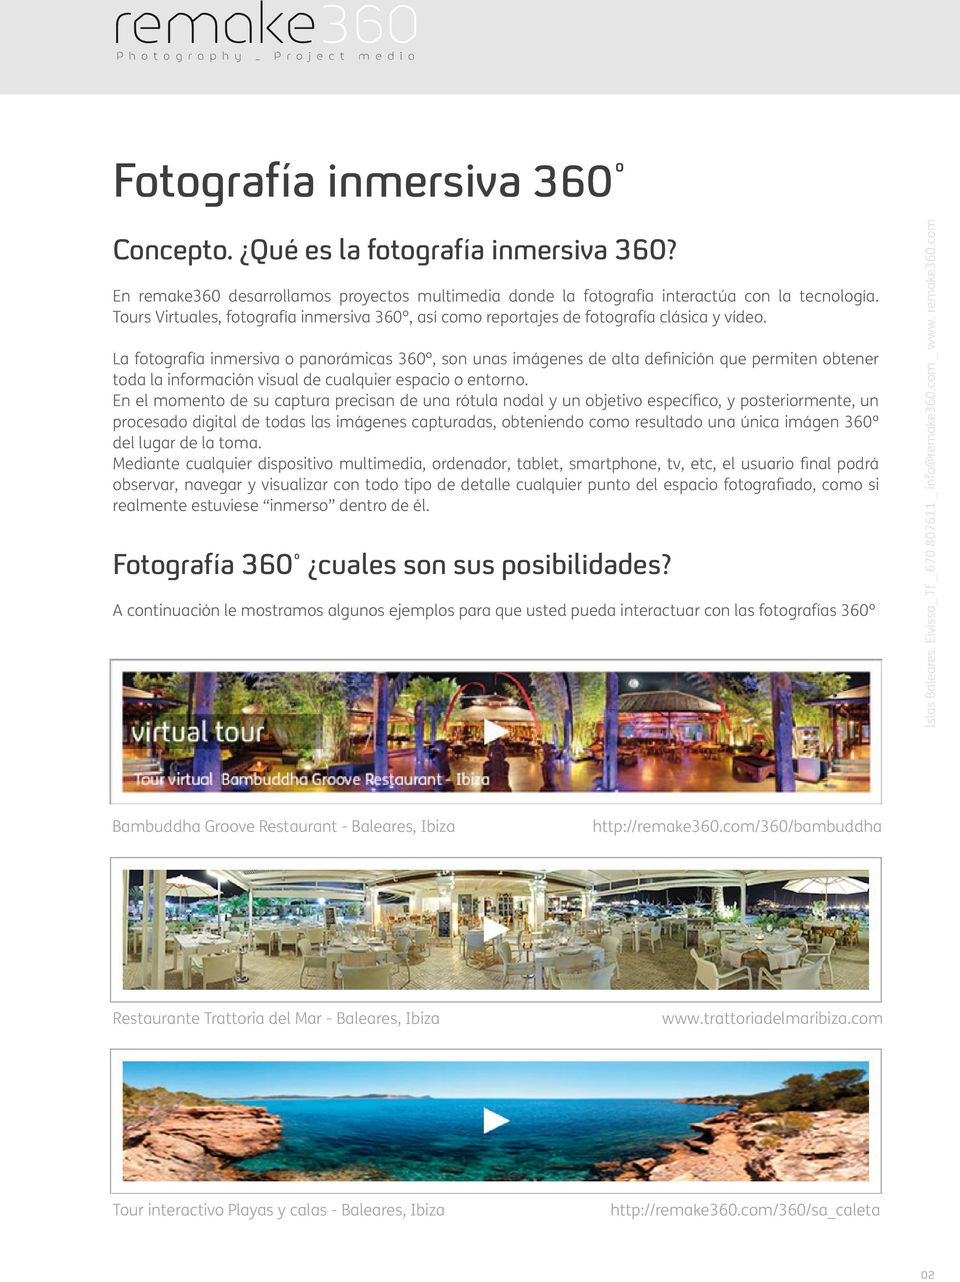 La fotografía inmersiva o panorámicas 360º, son unas imágenes de alta definición que permiten obtener toda la información visual de cualquier espacio o entorno.